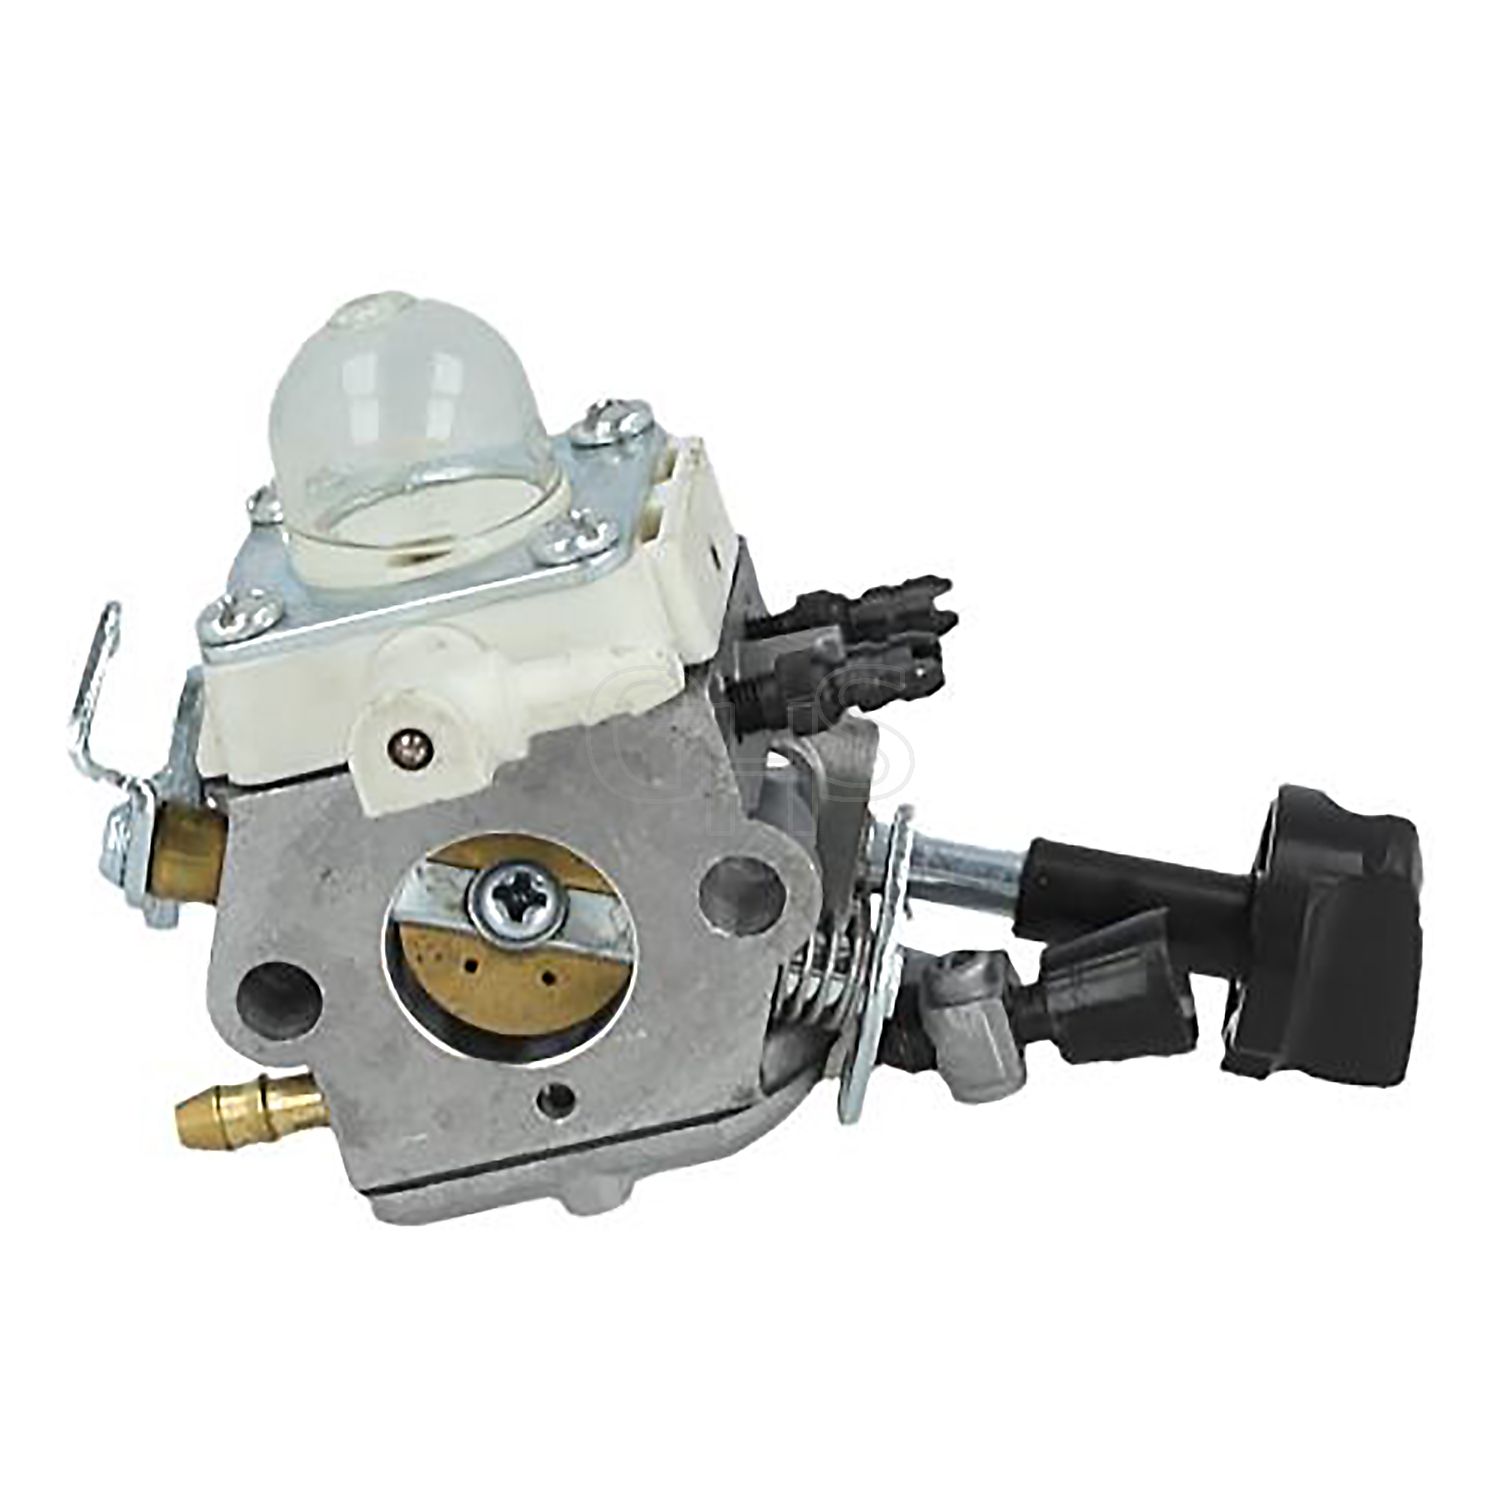 ZAMDOE Vergaser für Stihl BG86 BG86C Laubbläsermotor, 4241 120 0623, 4241  120 0616, mit HD2 Luftfilter + Zündkerze + Kraftstoffleitung +